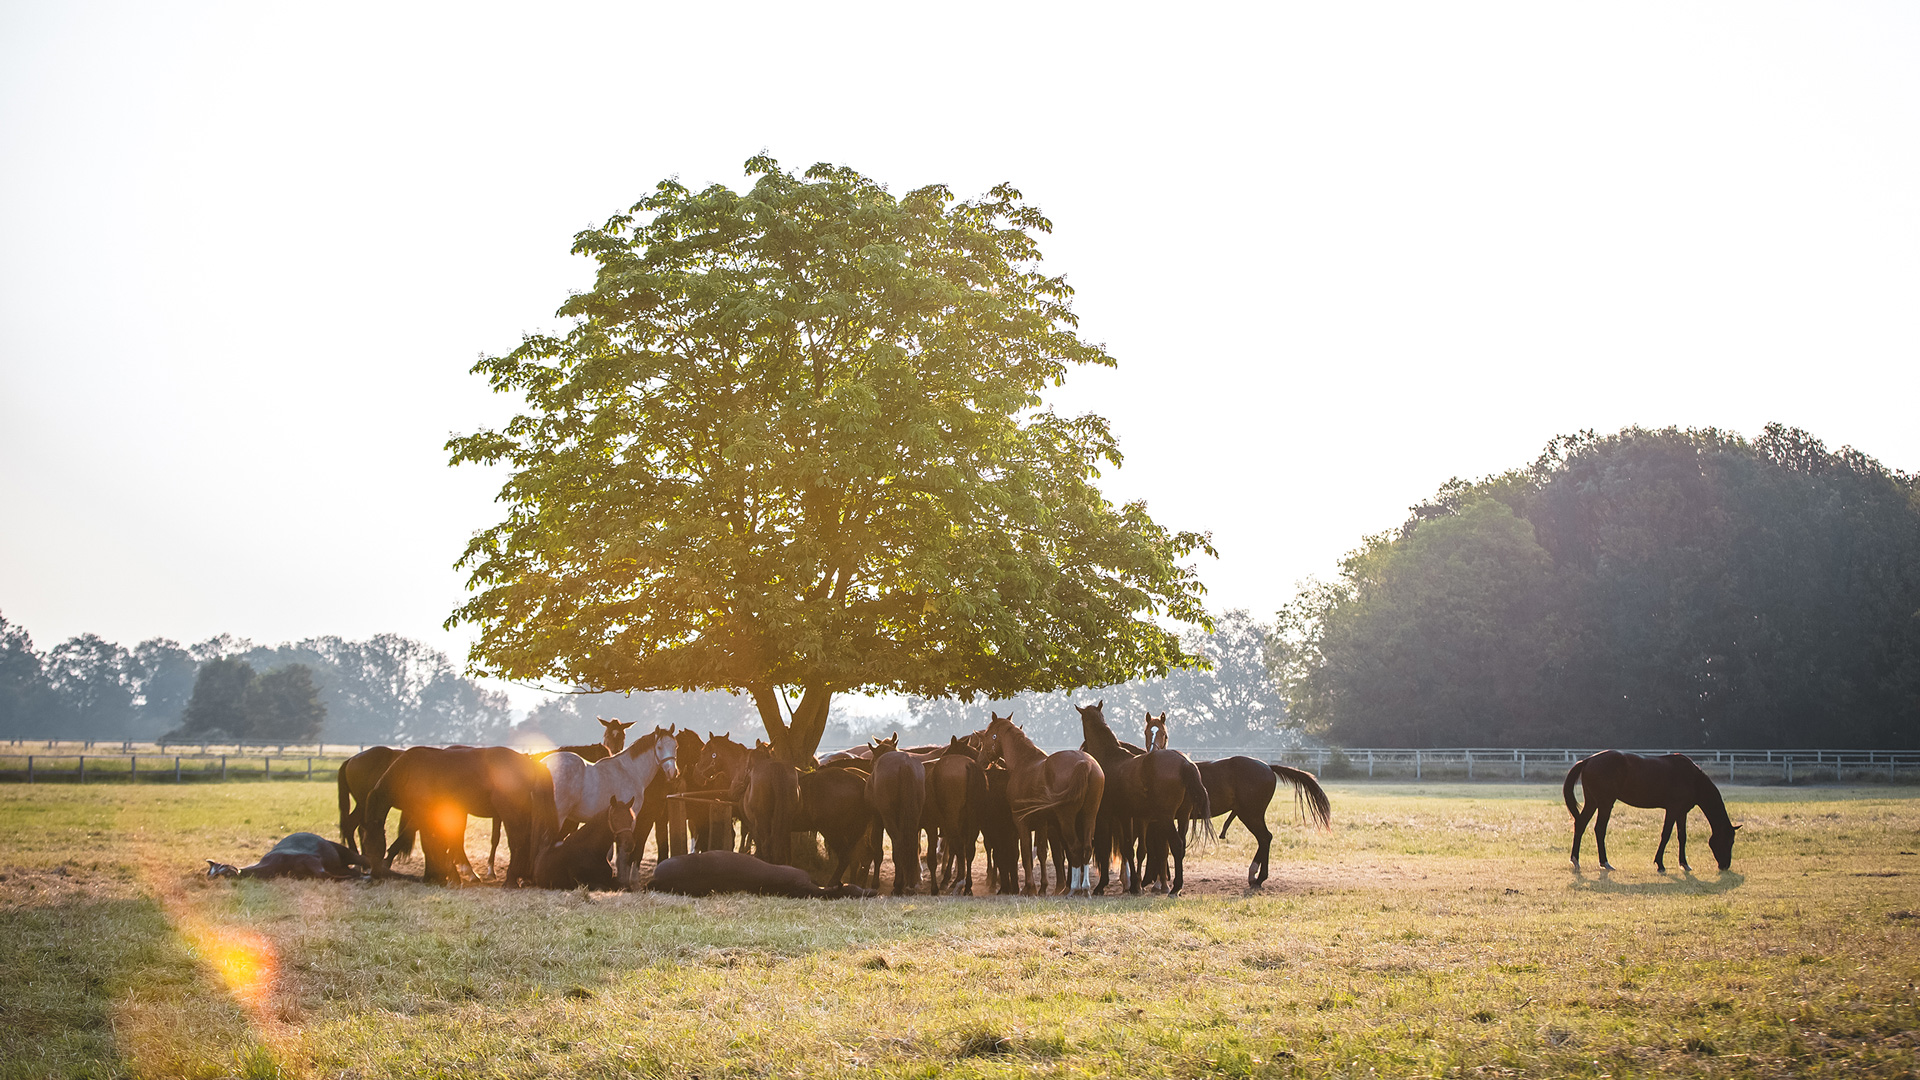 Eine Landschaftsaufnahme: Hinten im Bild ist eine Gruppe Pferde zu erkennen, die unter einem Baum grast.